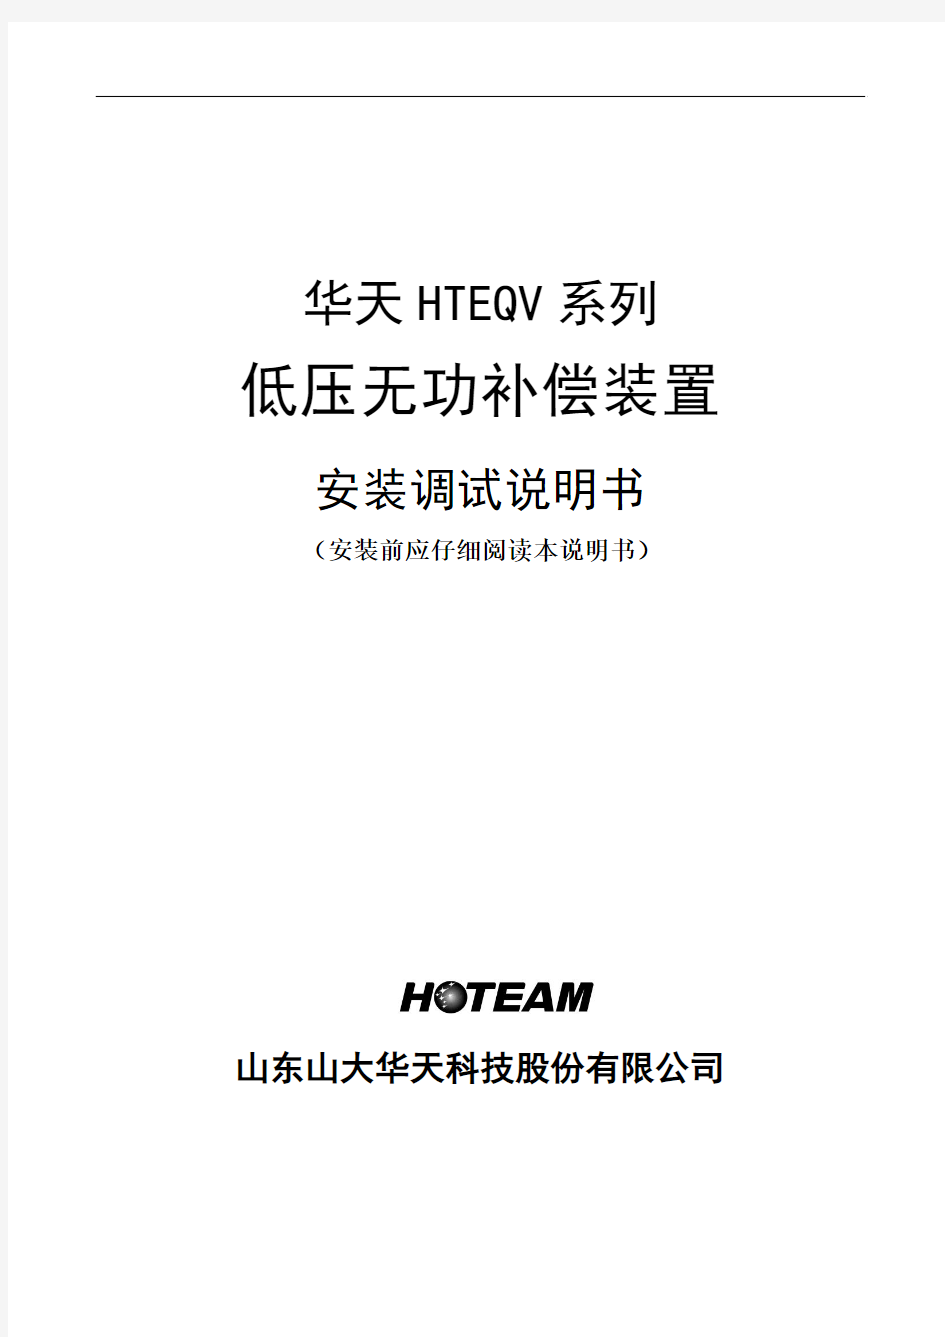 HTEQV系列无功补偿装置安装调试说明书2012.3.29